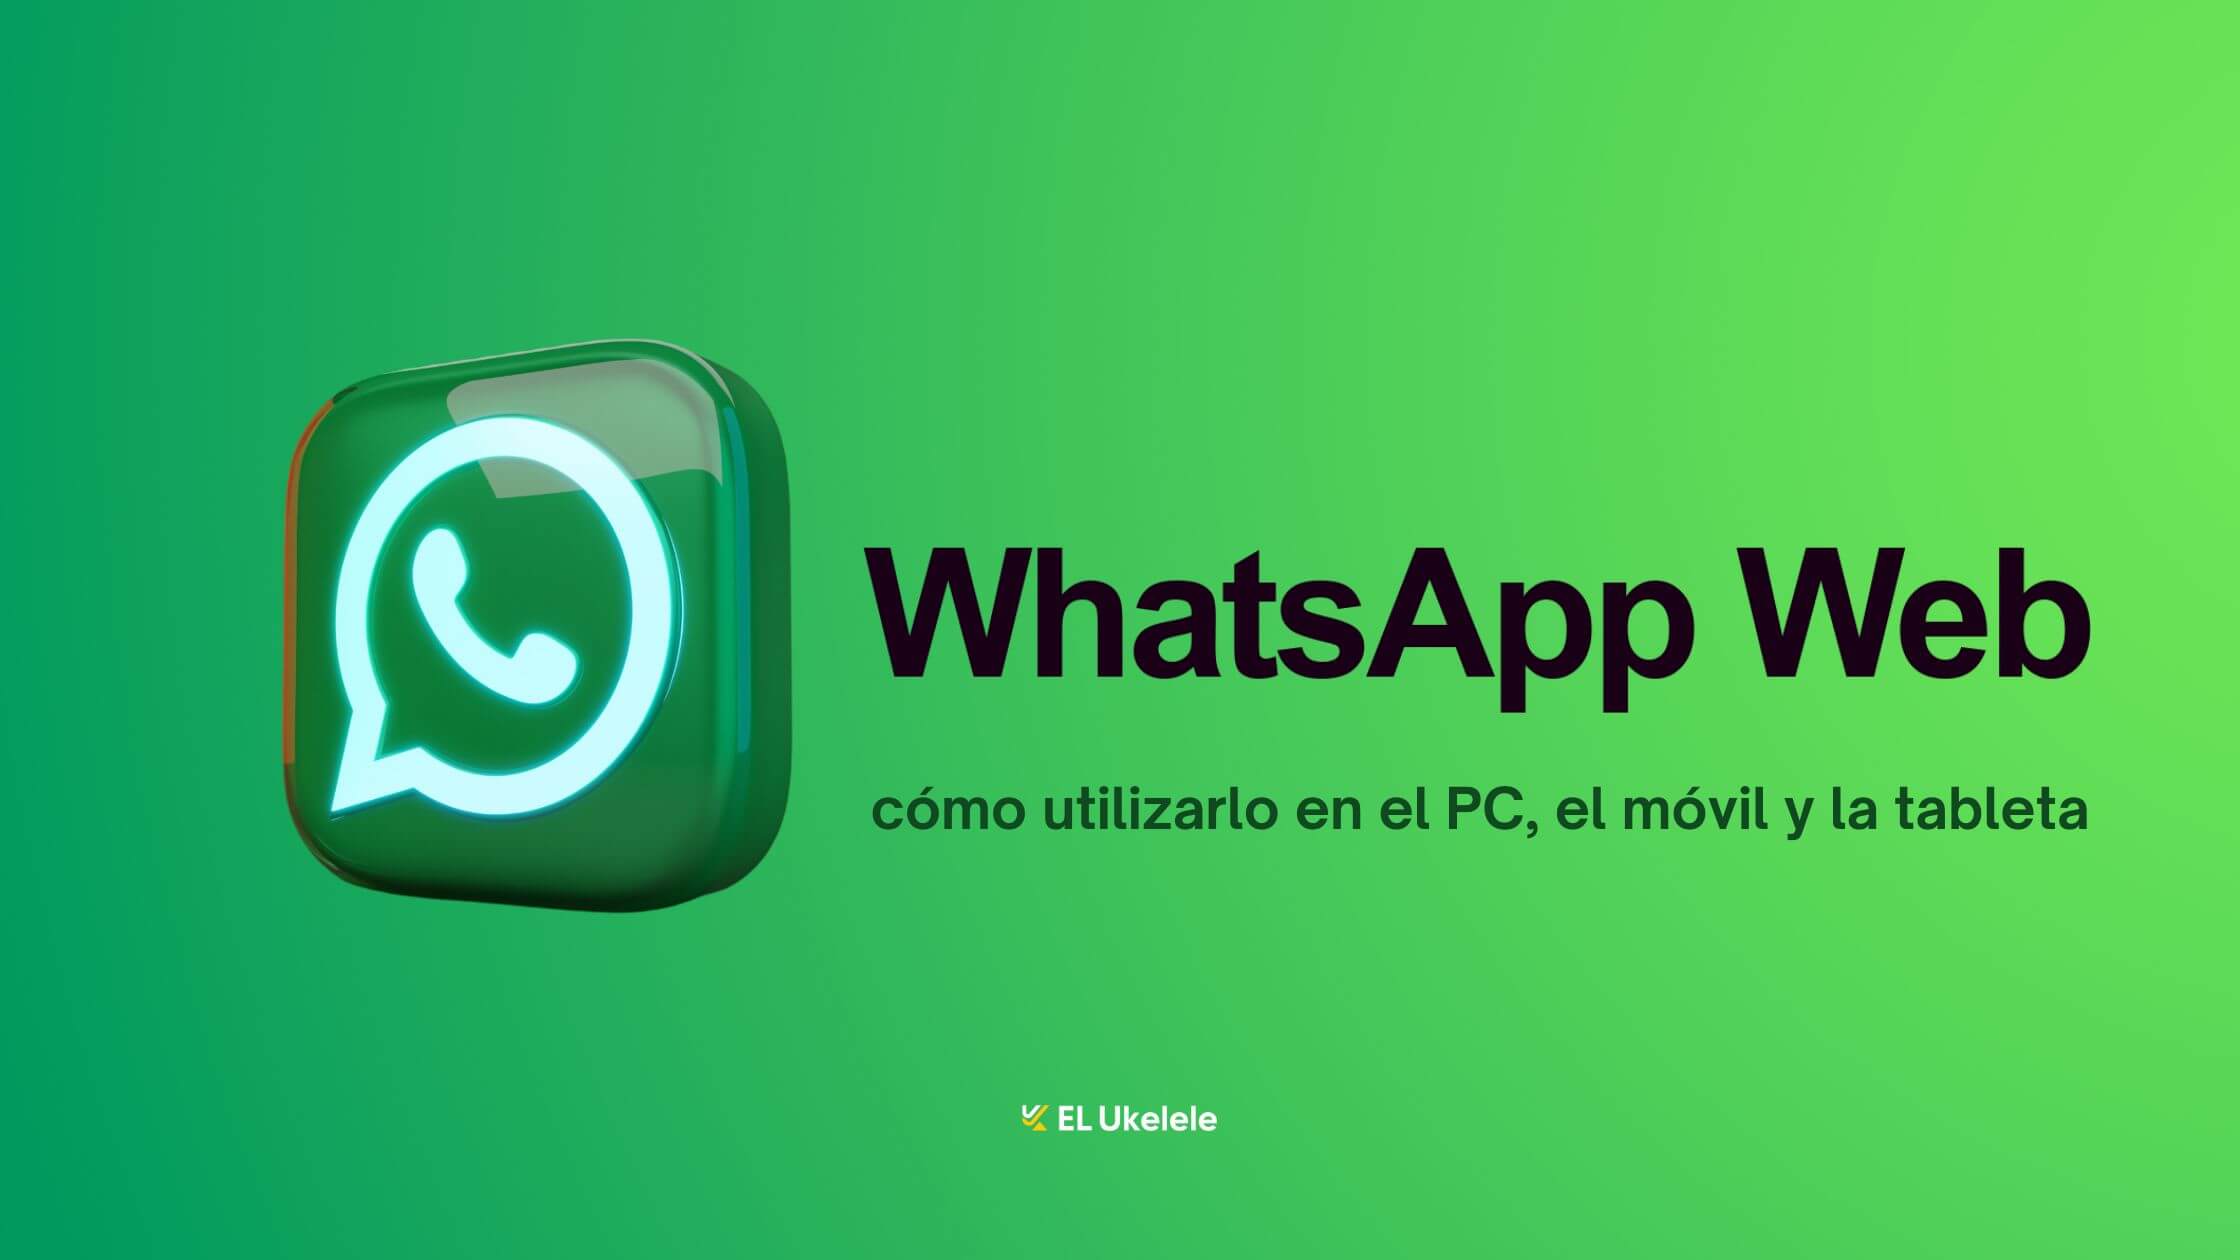 WhatsApp Web como usar WhatsApp Web en el PC la tableta y el movil y los mejores trucos. 1